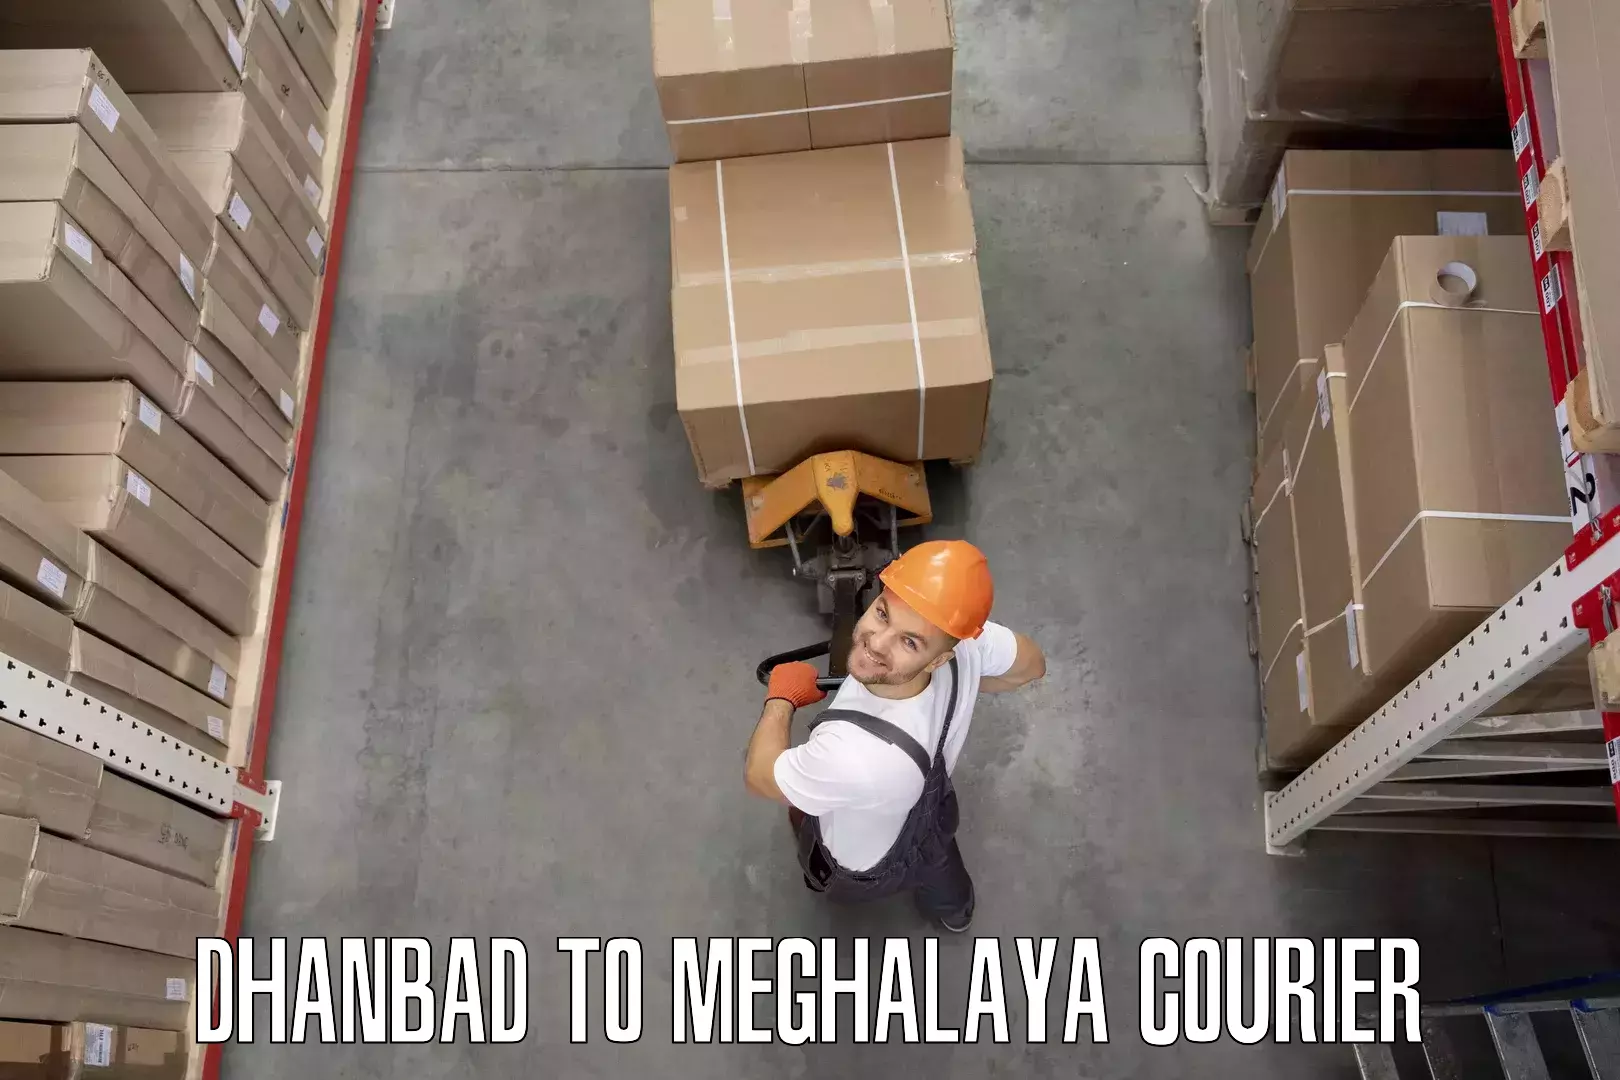 Furniture transport experts Dhanbad to Meghalaya